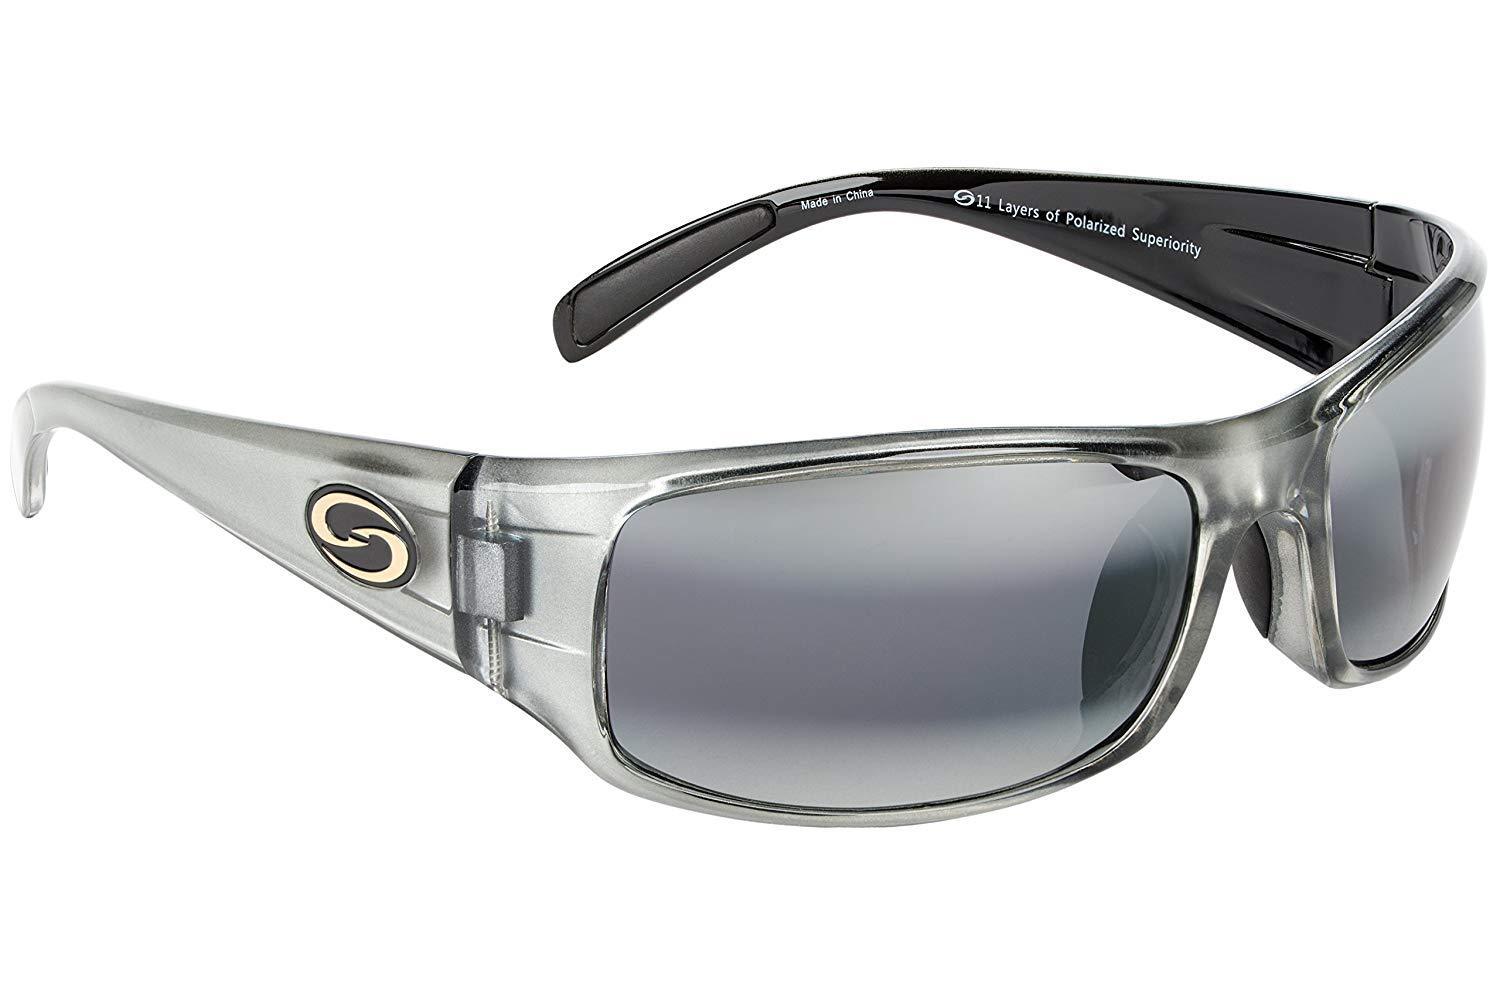 Strike King SG-S1158 Okeechobee Sunglasses Gray Clear Gray/Black Frame Full Rim